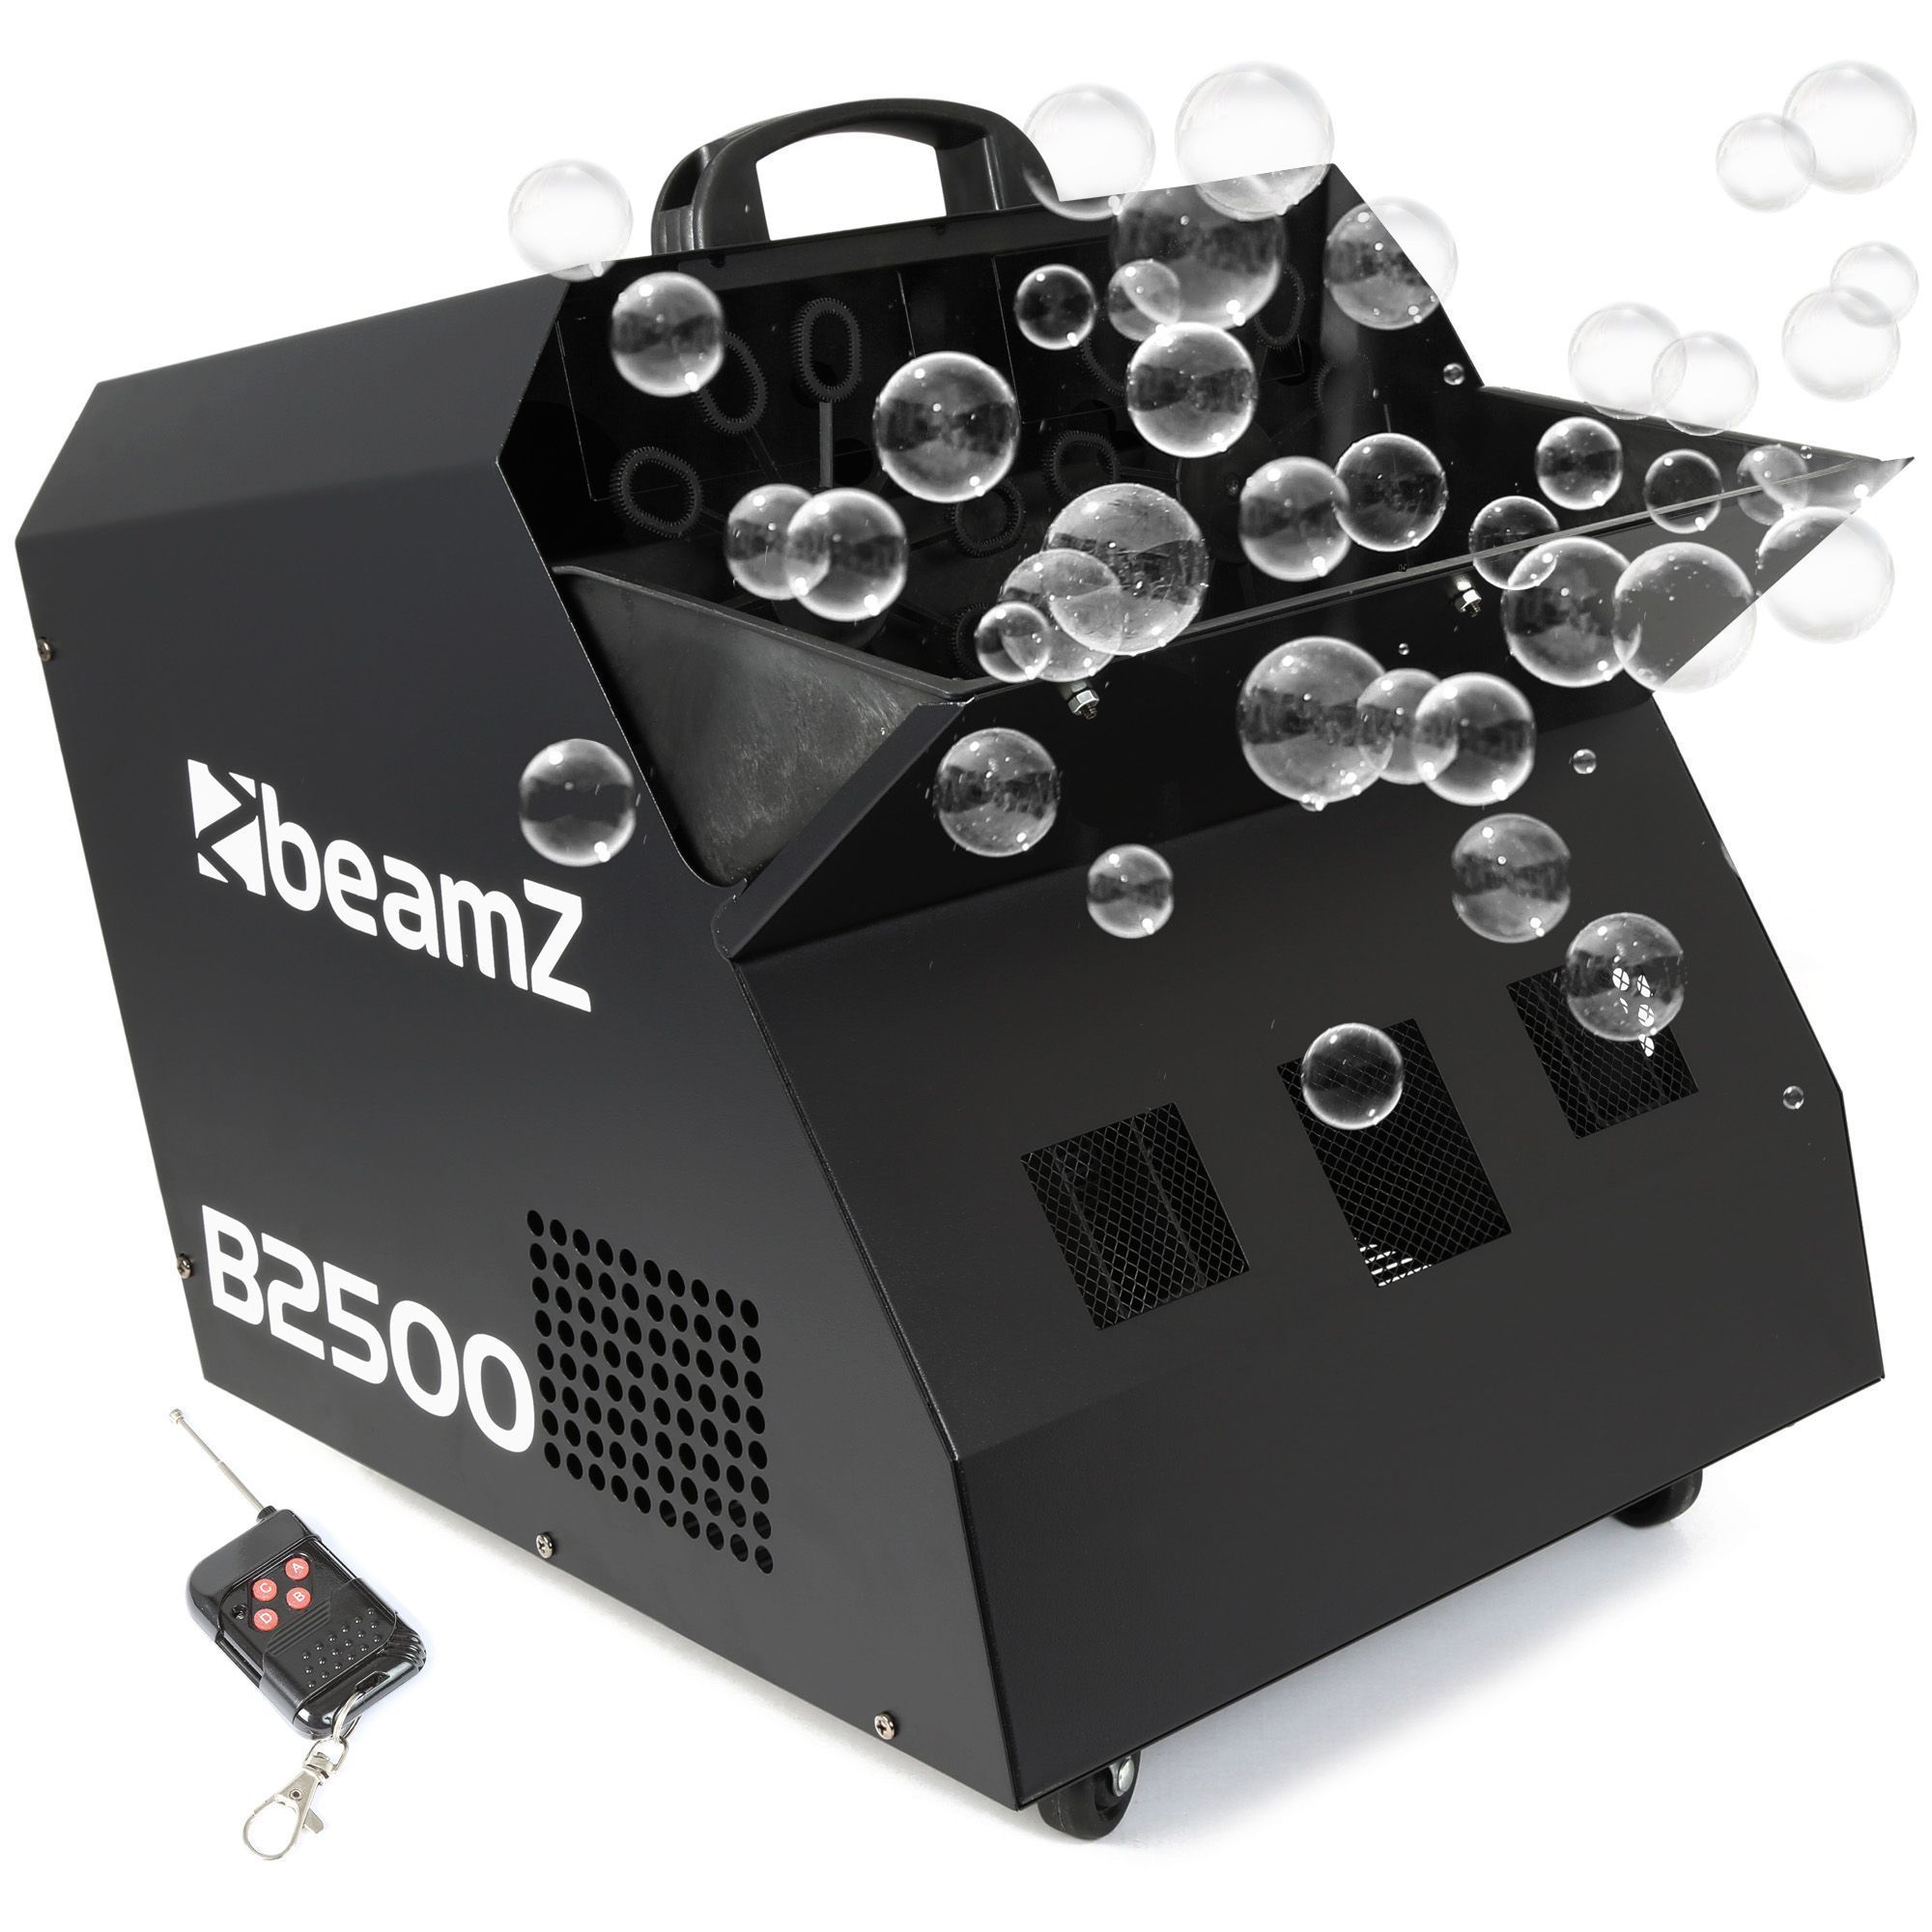 BeamZ B2500 Bdubbel bubbelmaskin stor modell